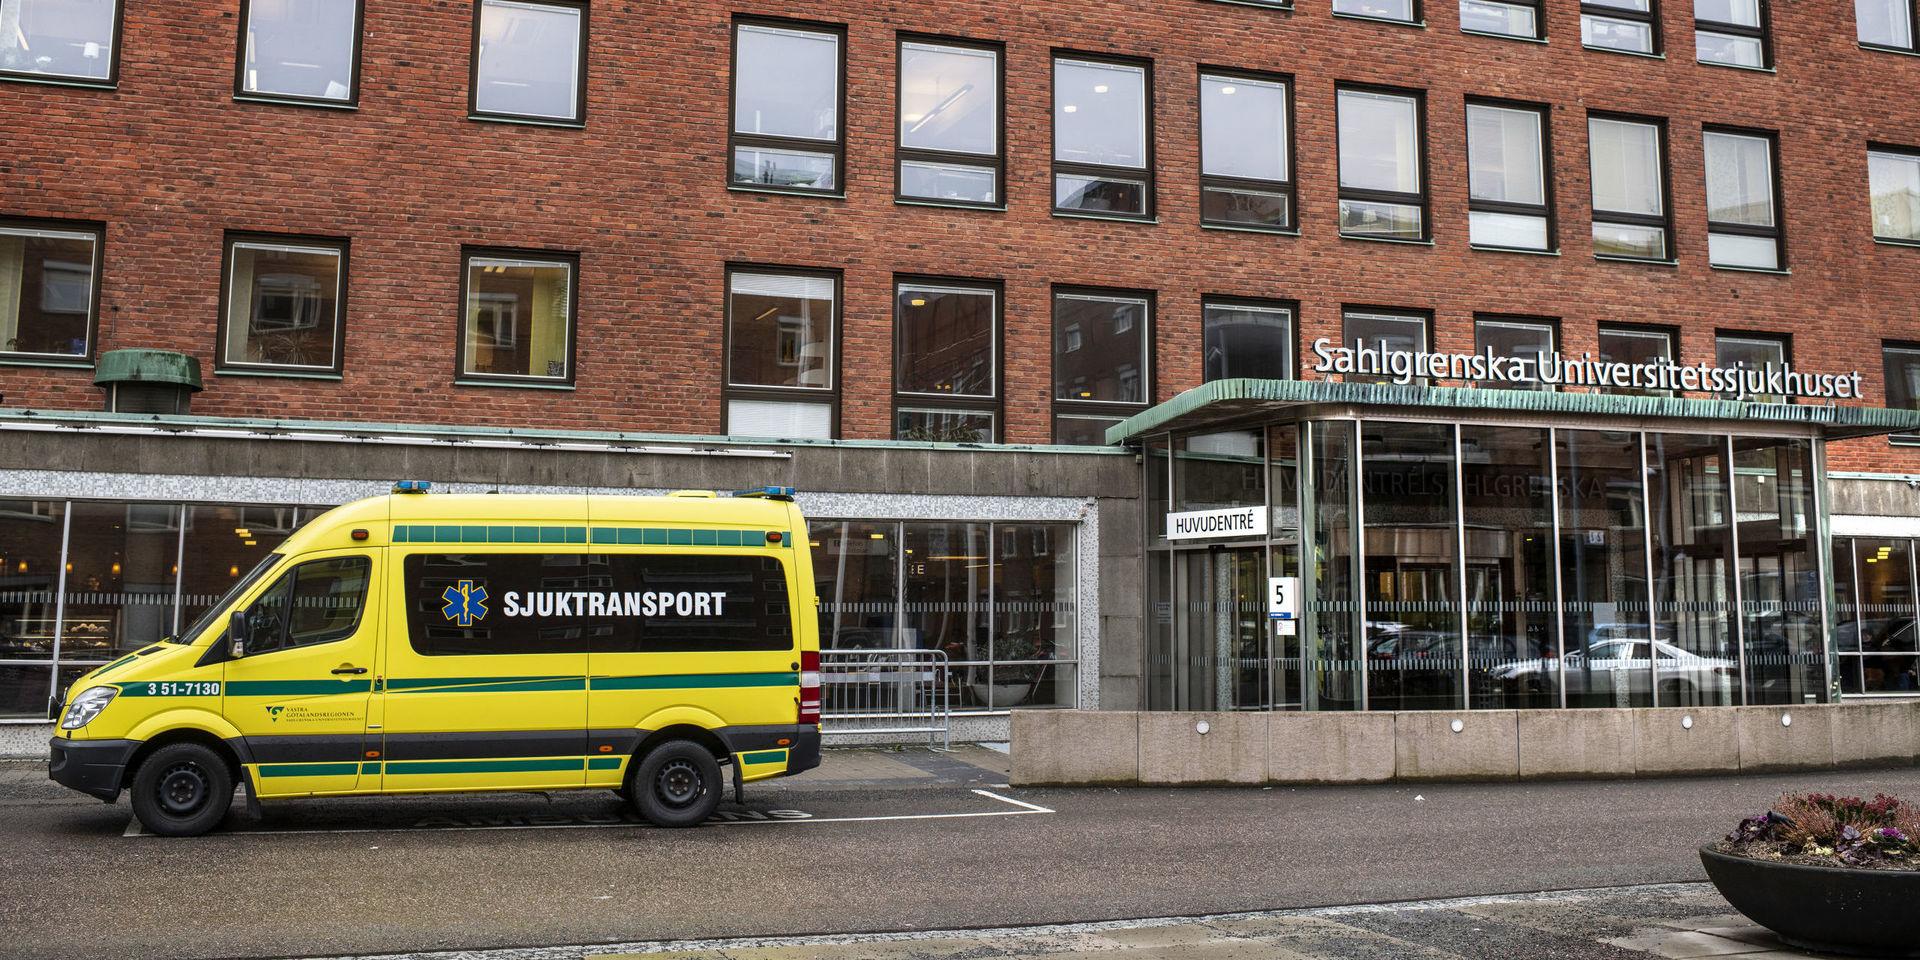 Nästa år ska Sahlgrenska universitetssjukhuset spara över en halv miljard kronor. 